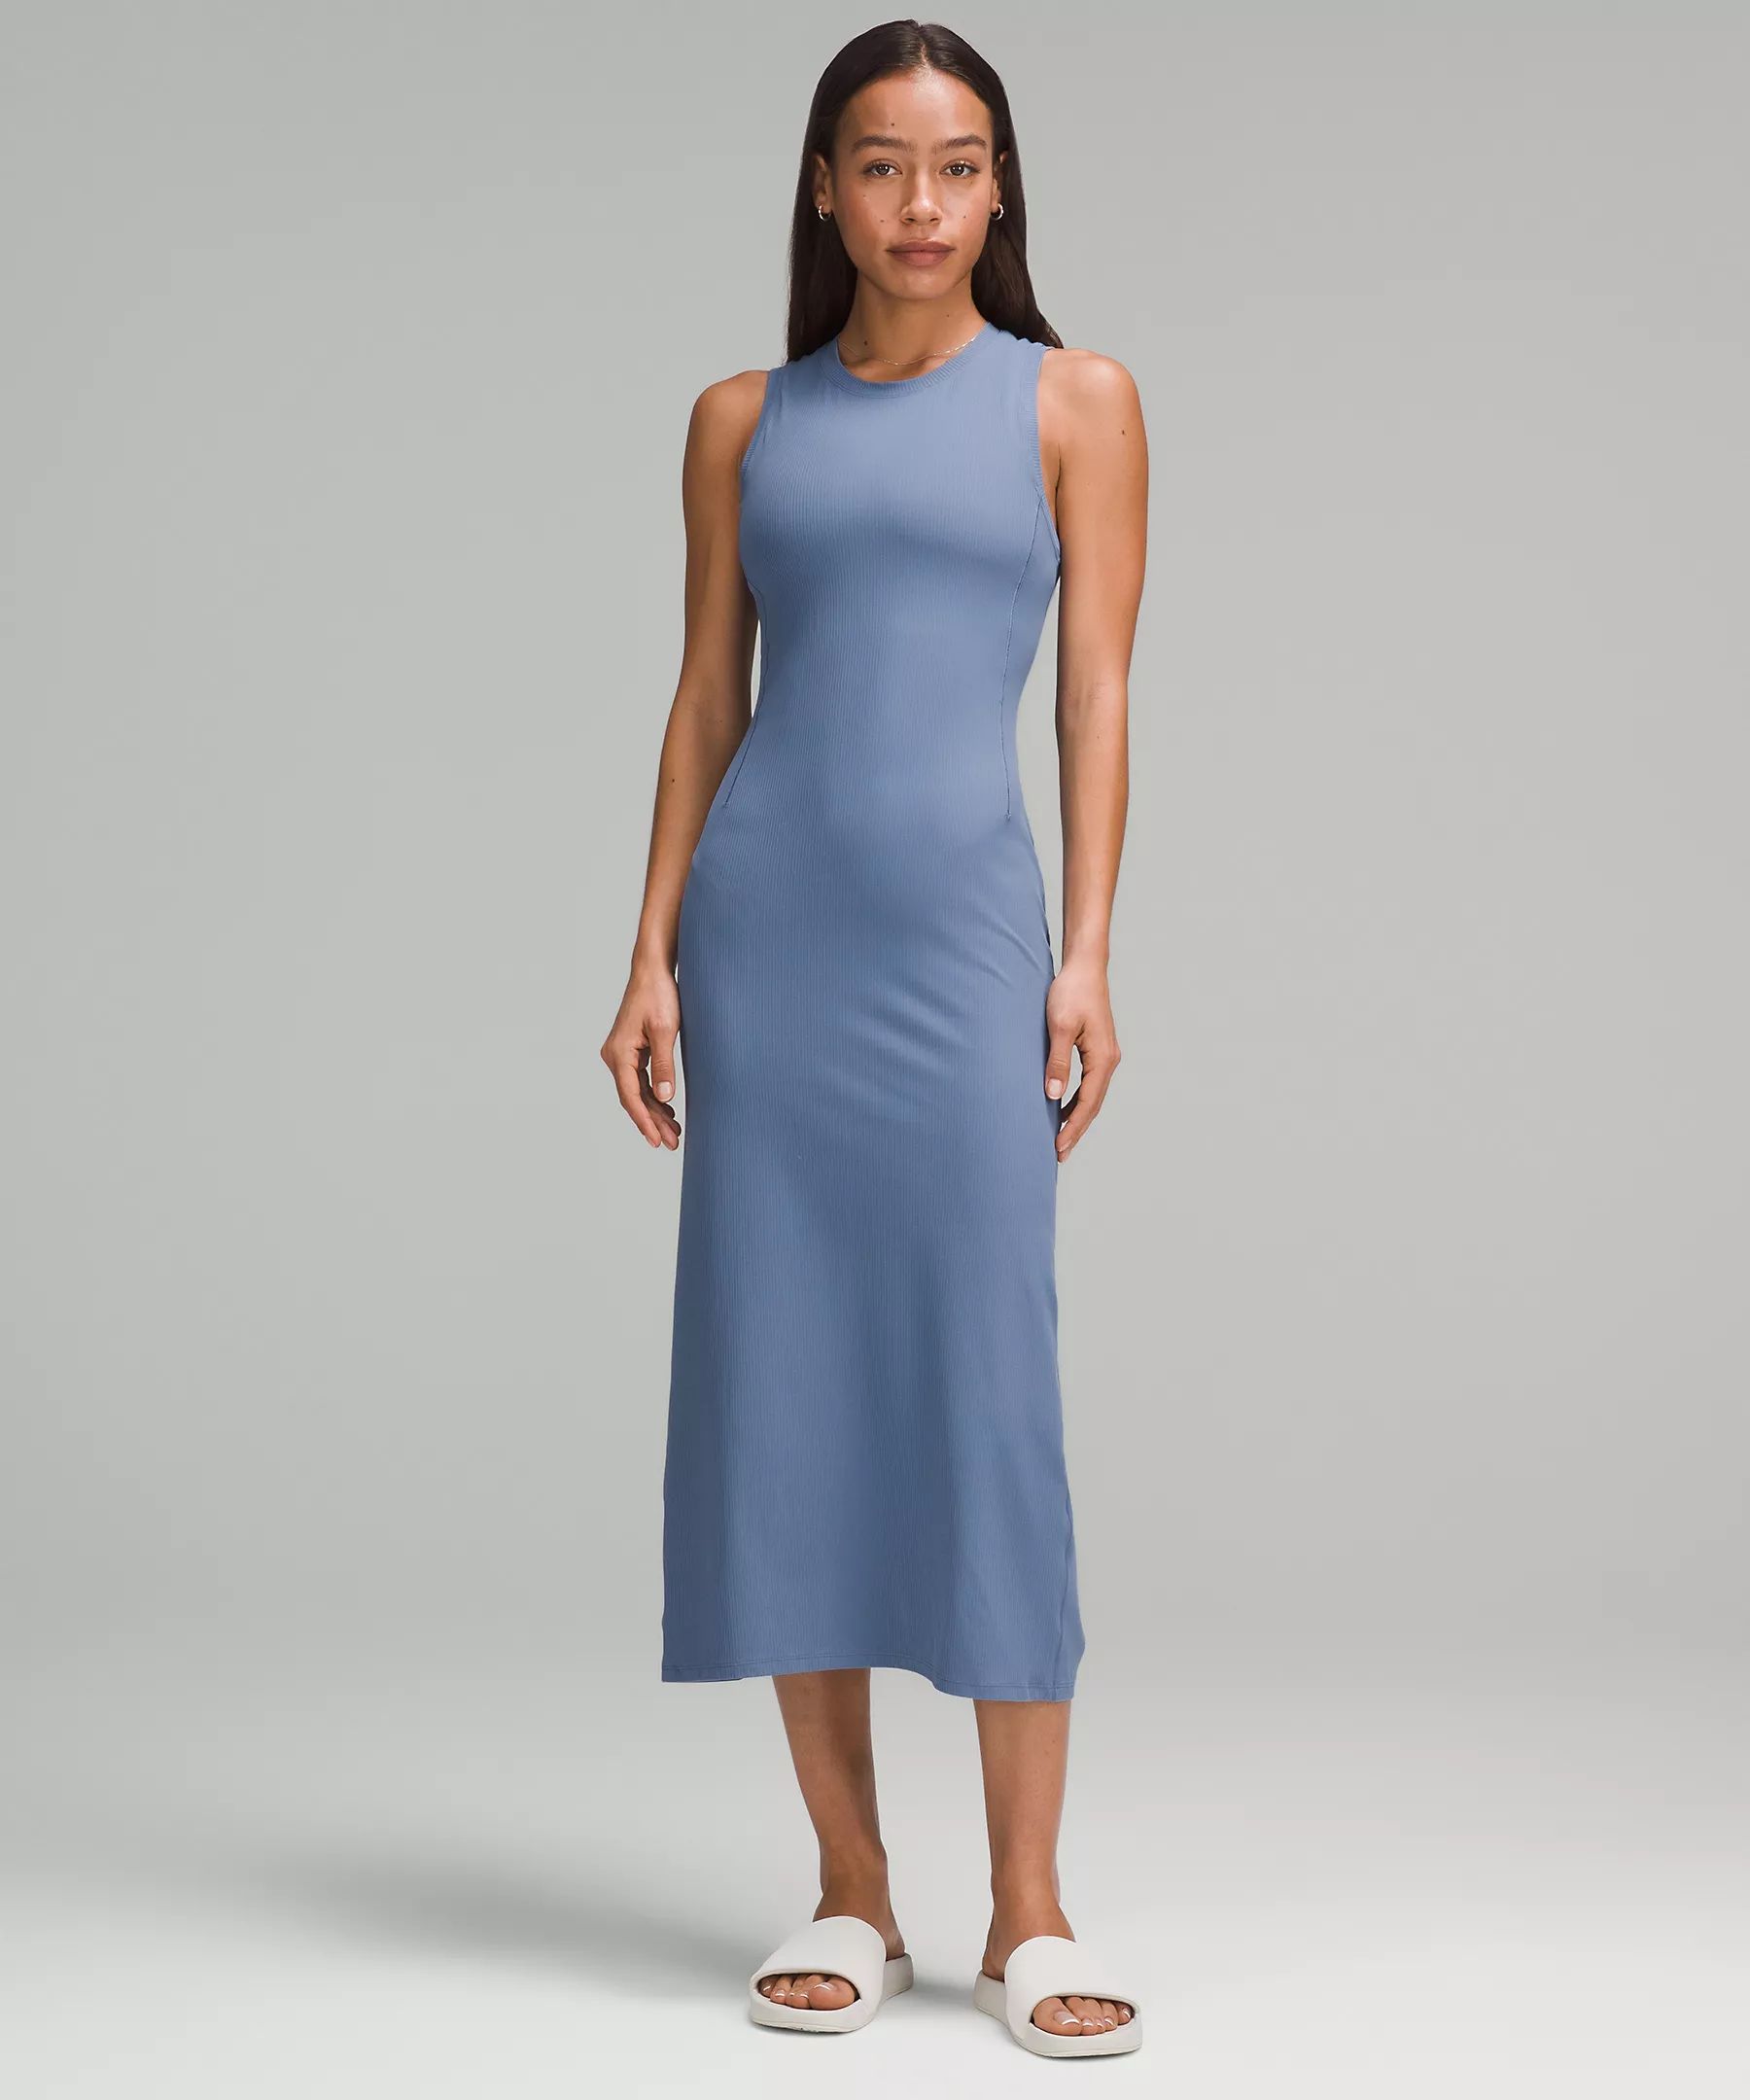 All Aligned Ribbed Midi Dress | Lululemon (US)